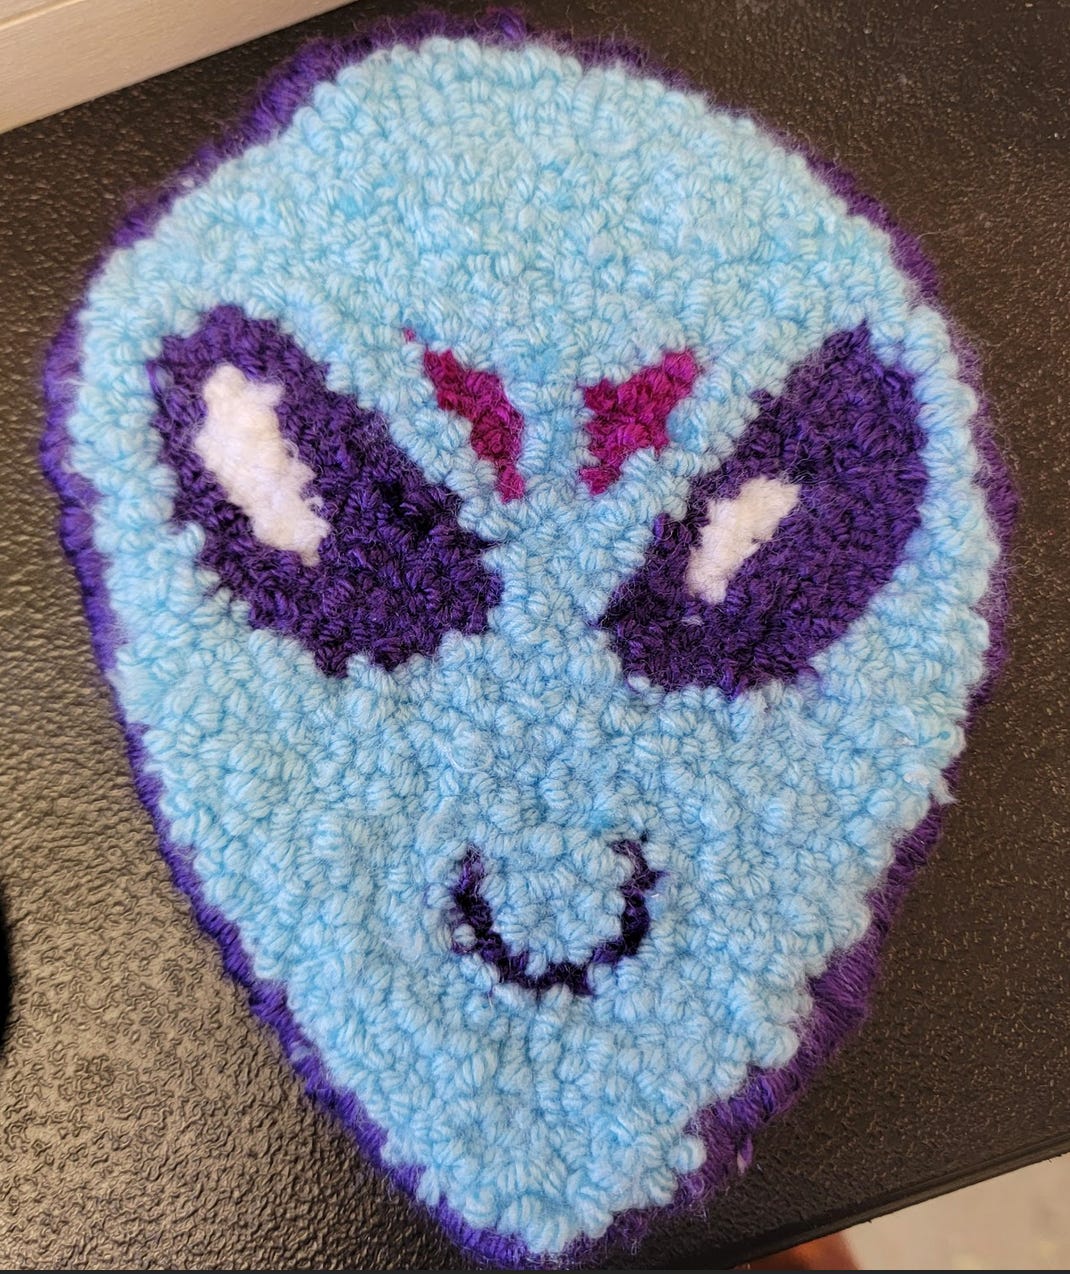 Blue and purple punchneedle alien head mini-rug.